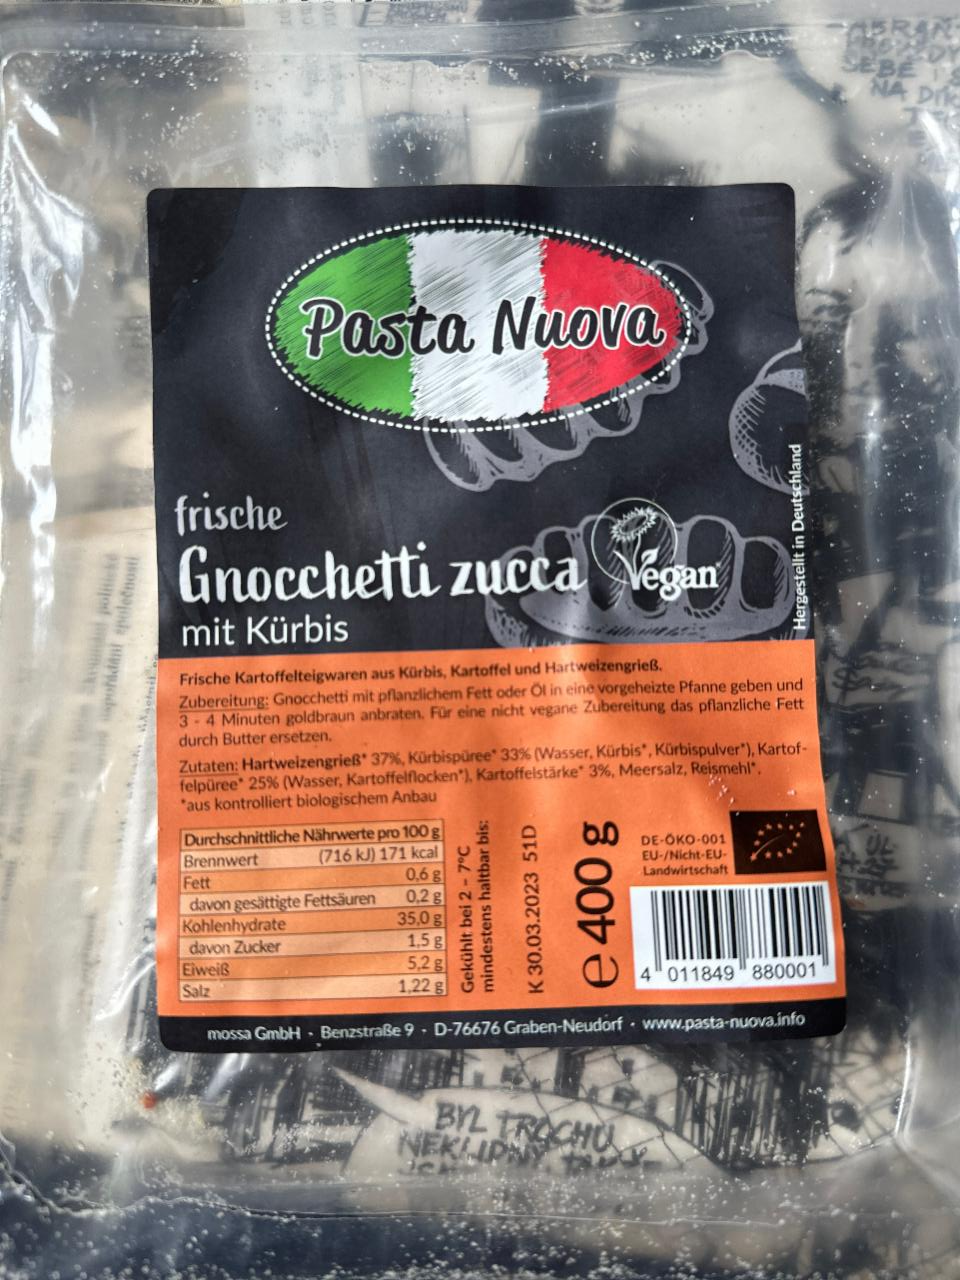 Fotografie - Gnocchetti zucca Pasta Nuova